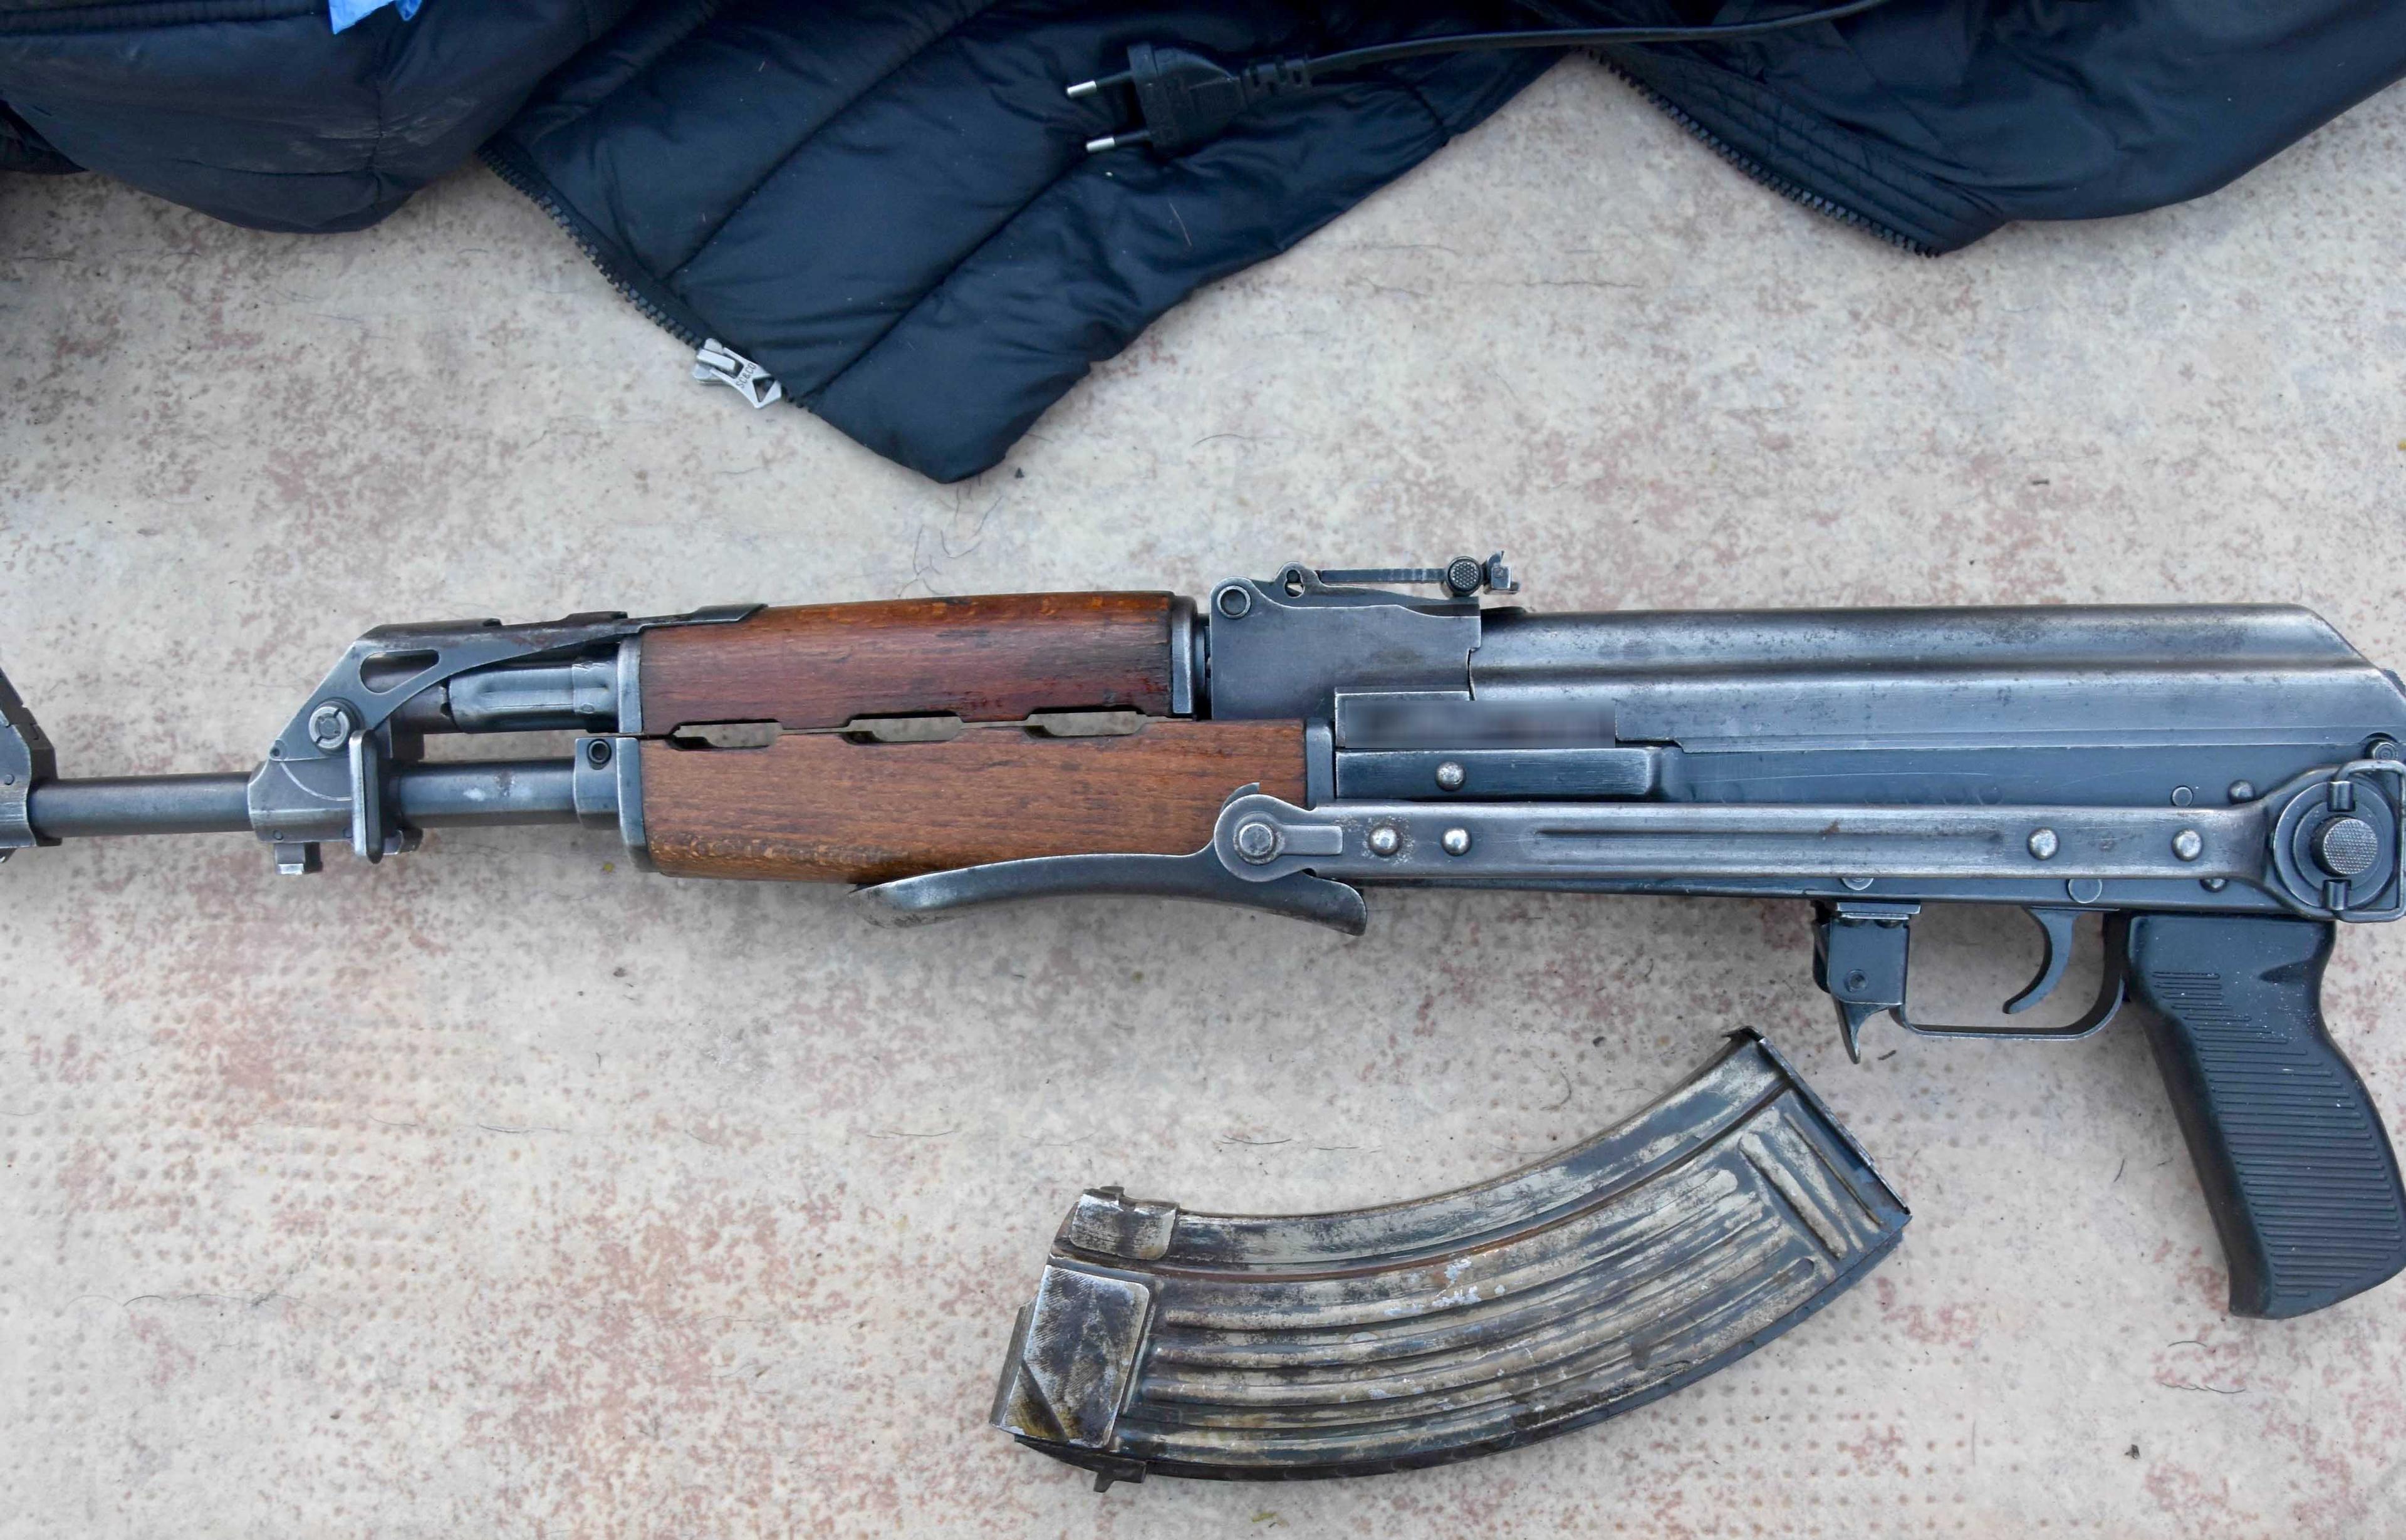 Srbija: Muškarac pokušao da unese dvije automatske puške, pištolj i municiju